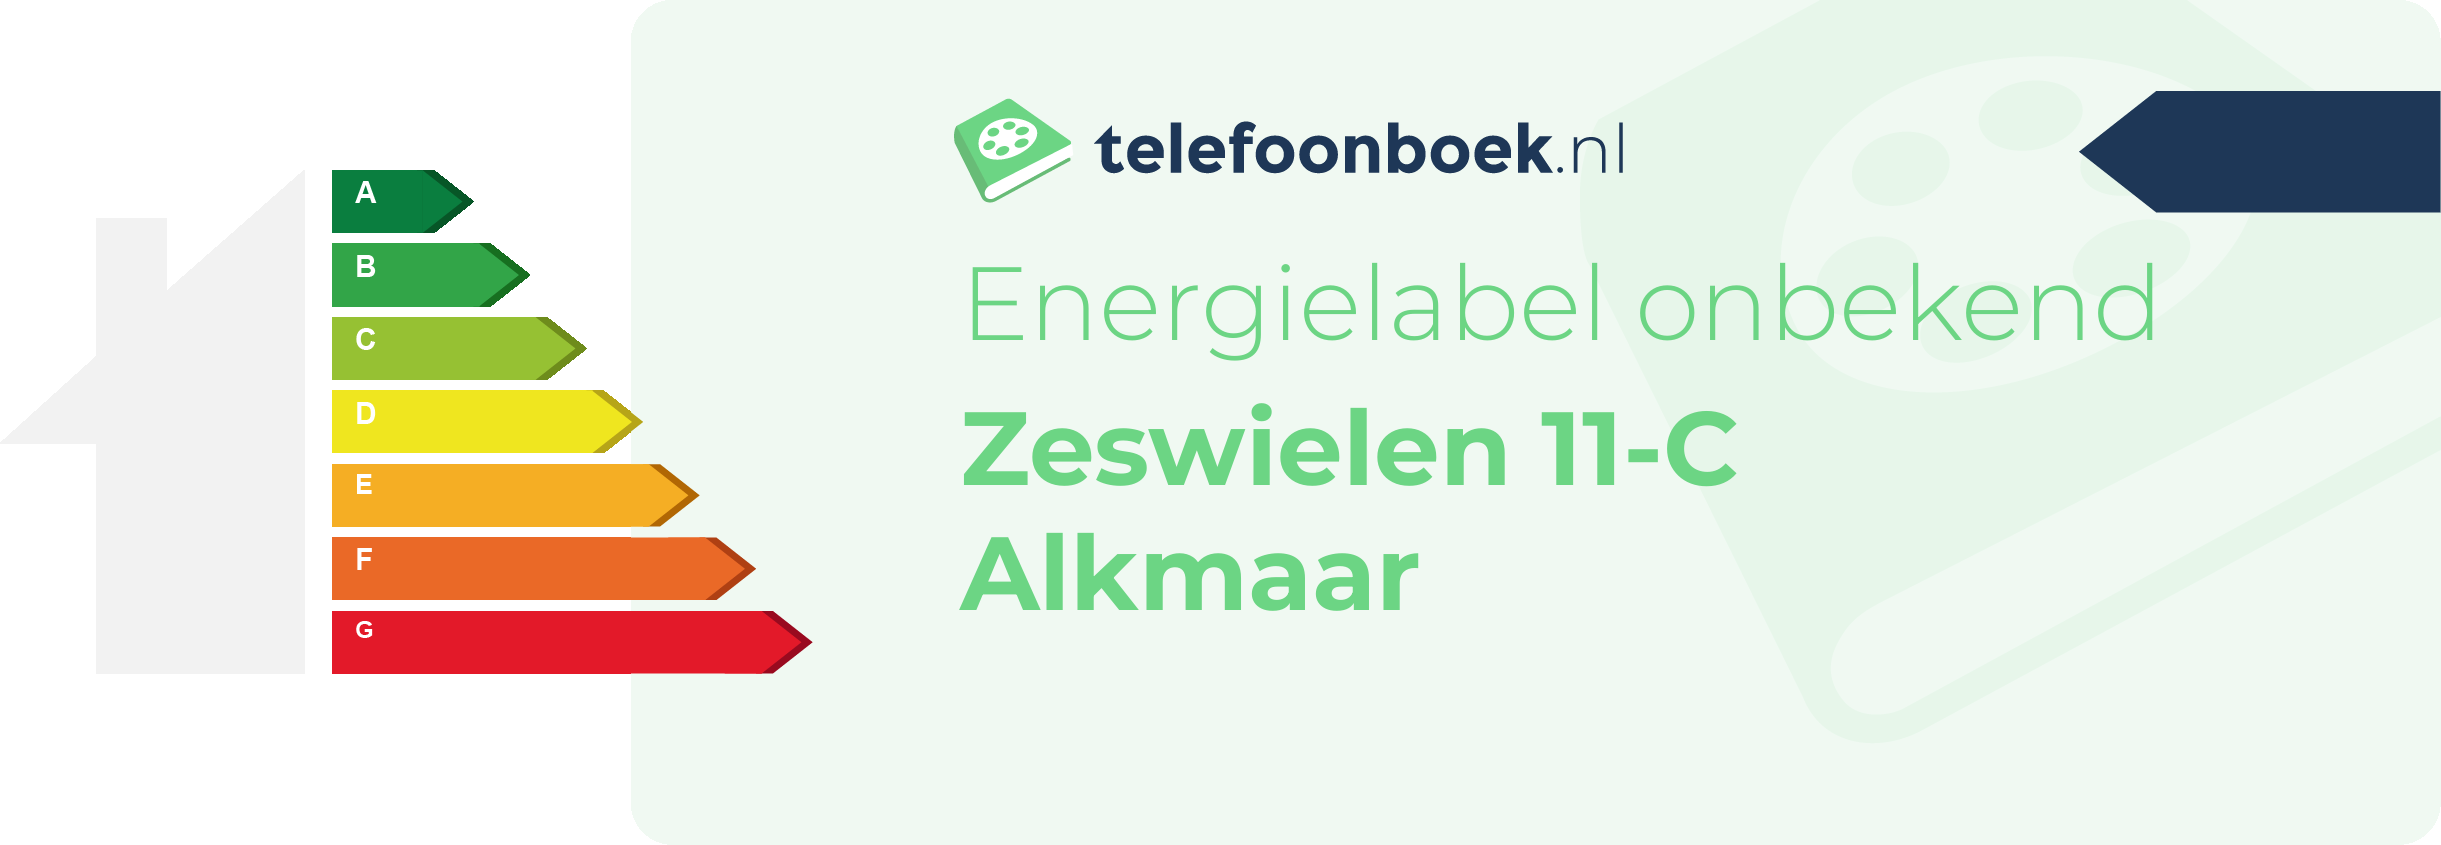 Energielabel Zeswielen 11-C Alkmaar